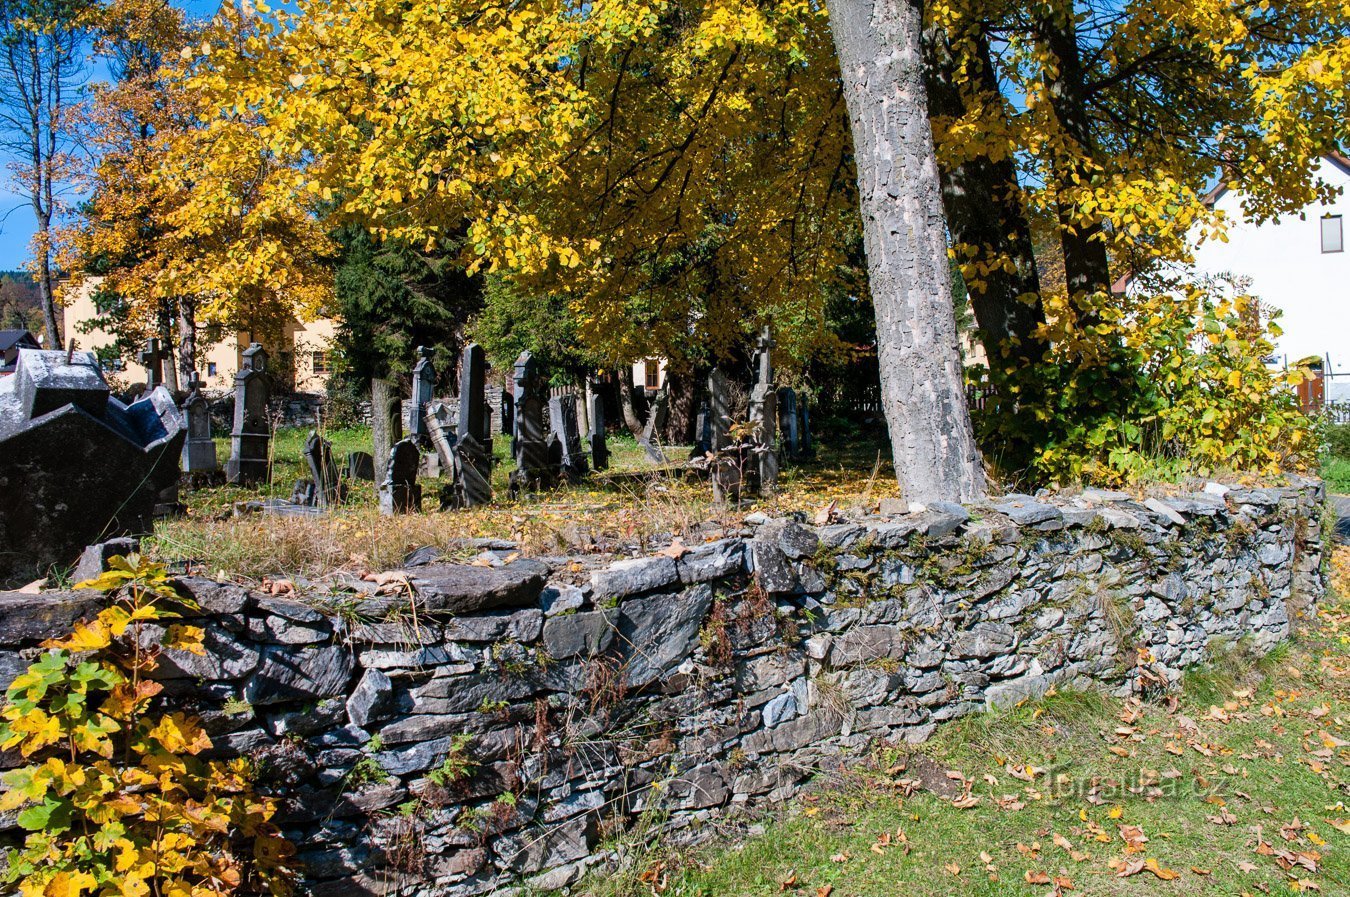 Ma il cimitero è probabilmente il più bello in autunno